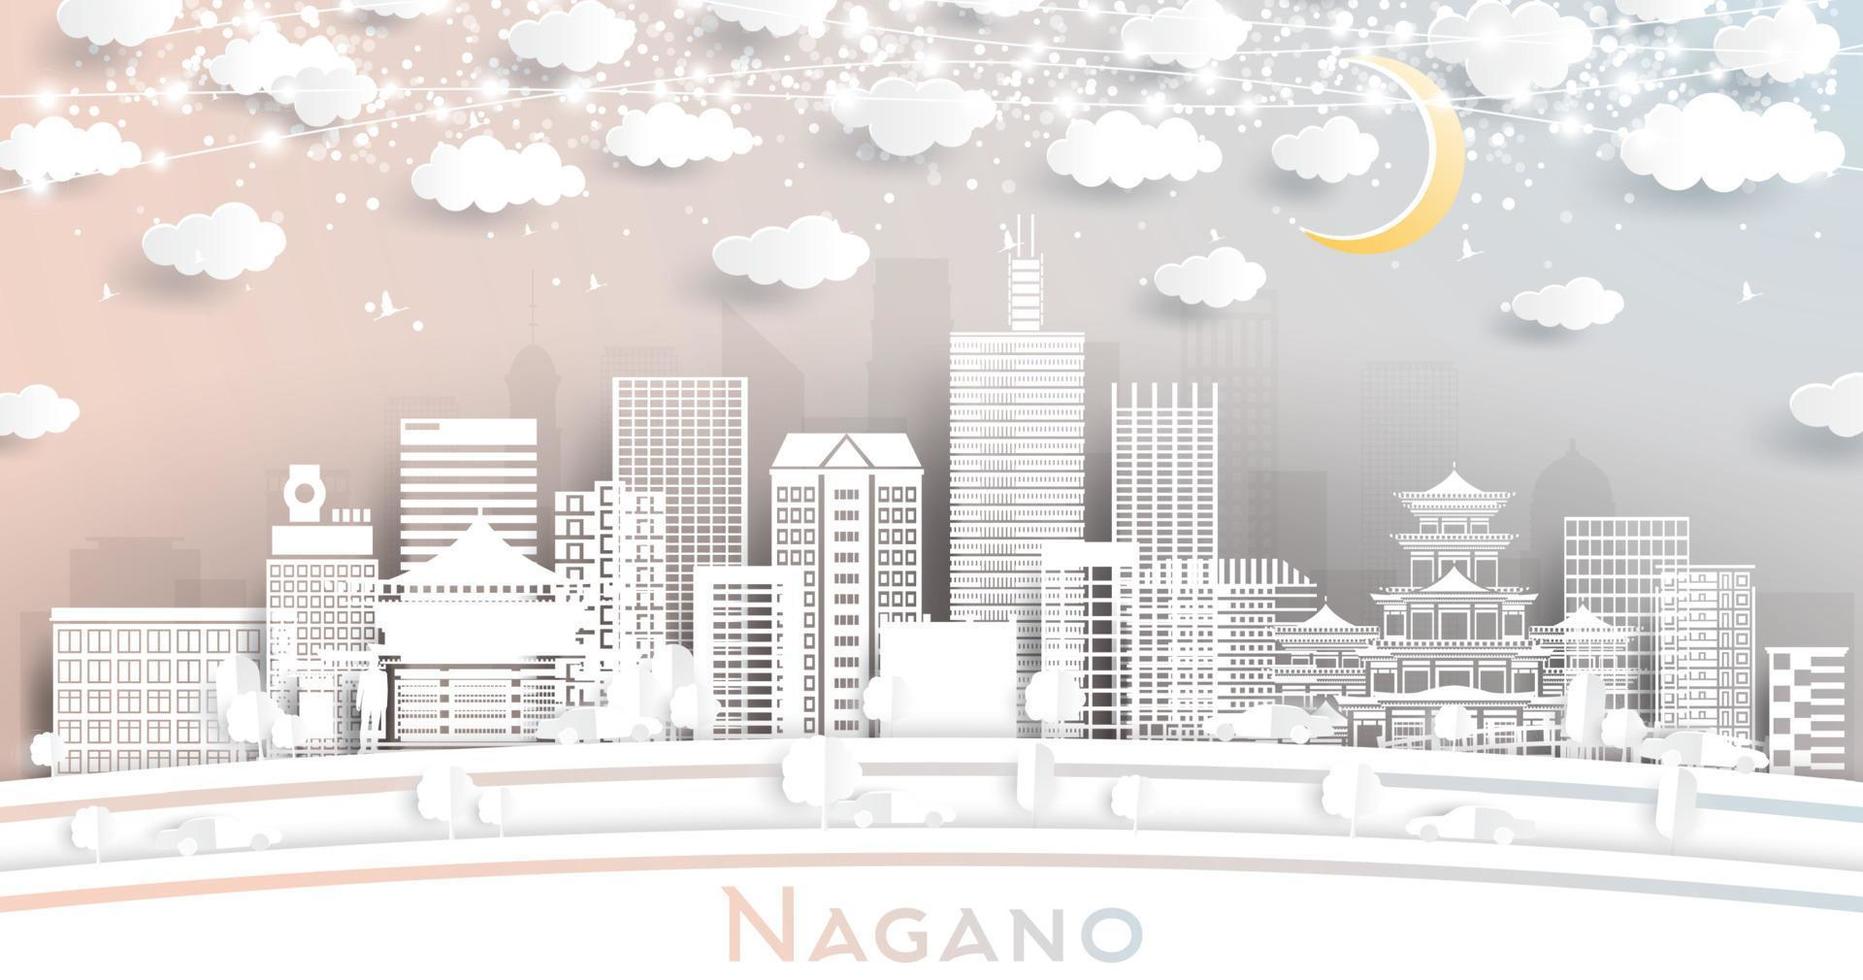 Nagano Japan stad horizon in papier besnoeiing stijl met wit gebouwen, maan en neon guirlande. vector